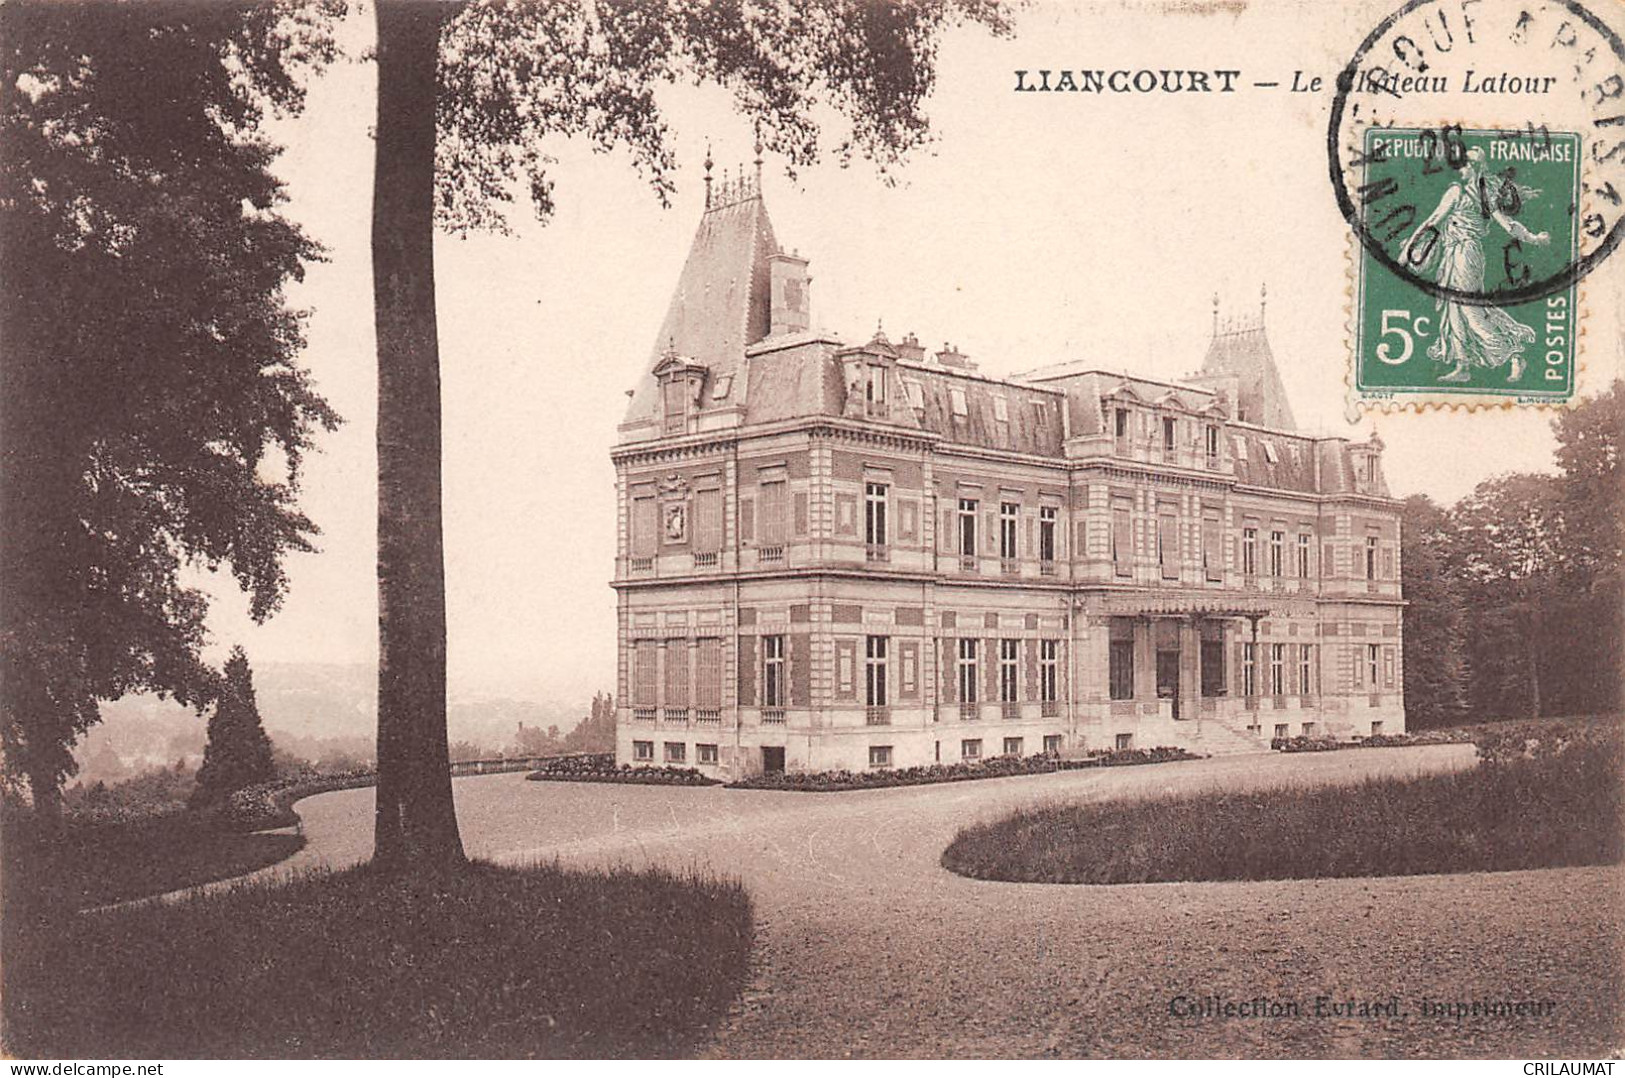 60-LIANCOURT-Le Chateau Latour-N 6002-C/0371 - Liancourt